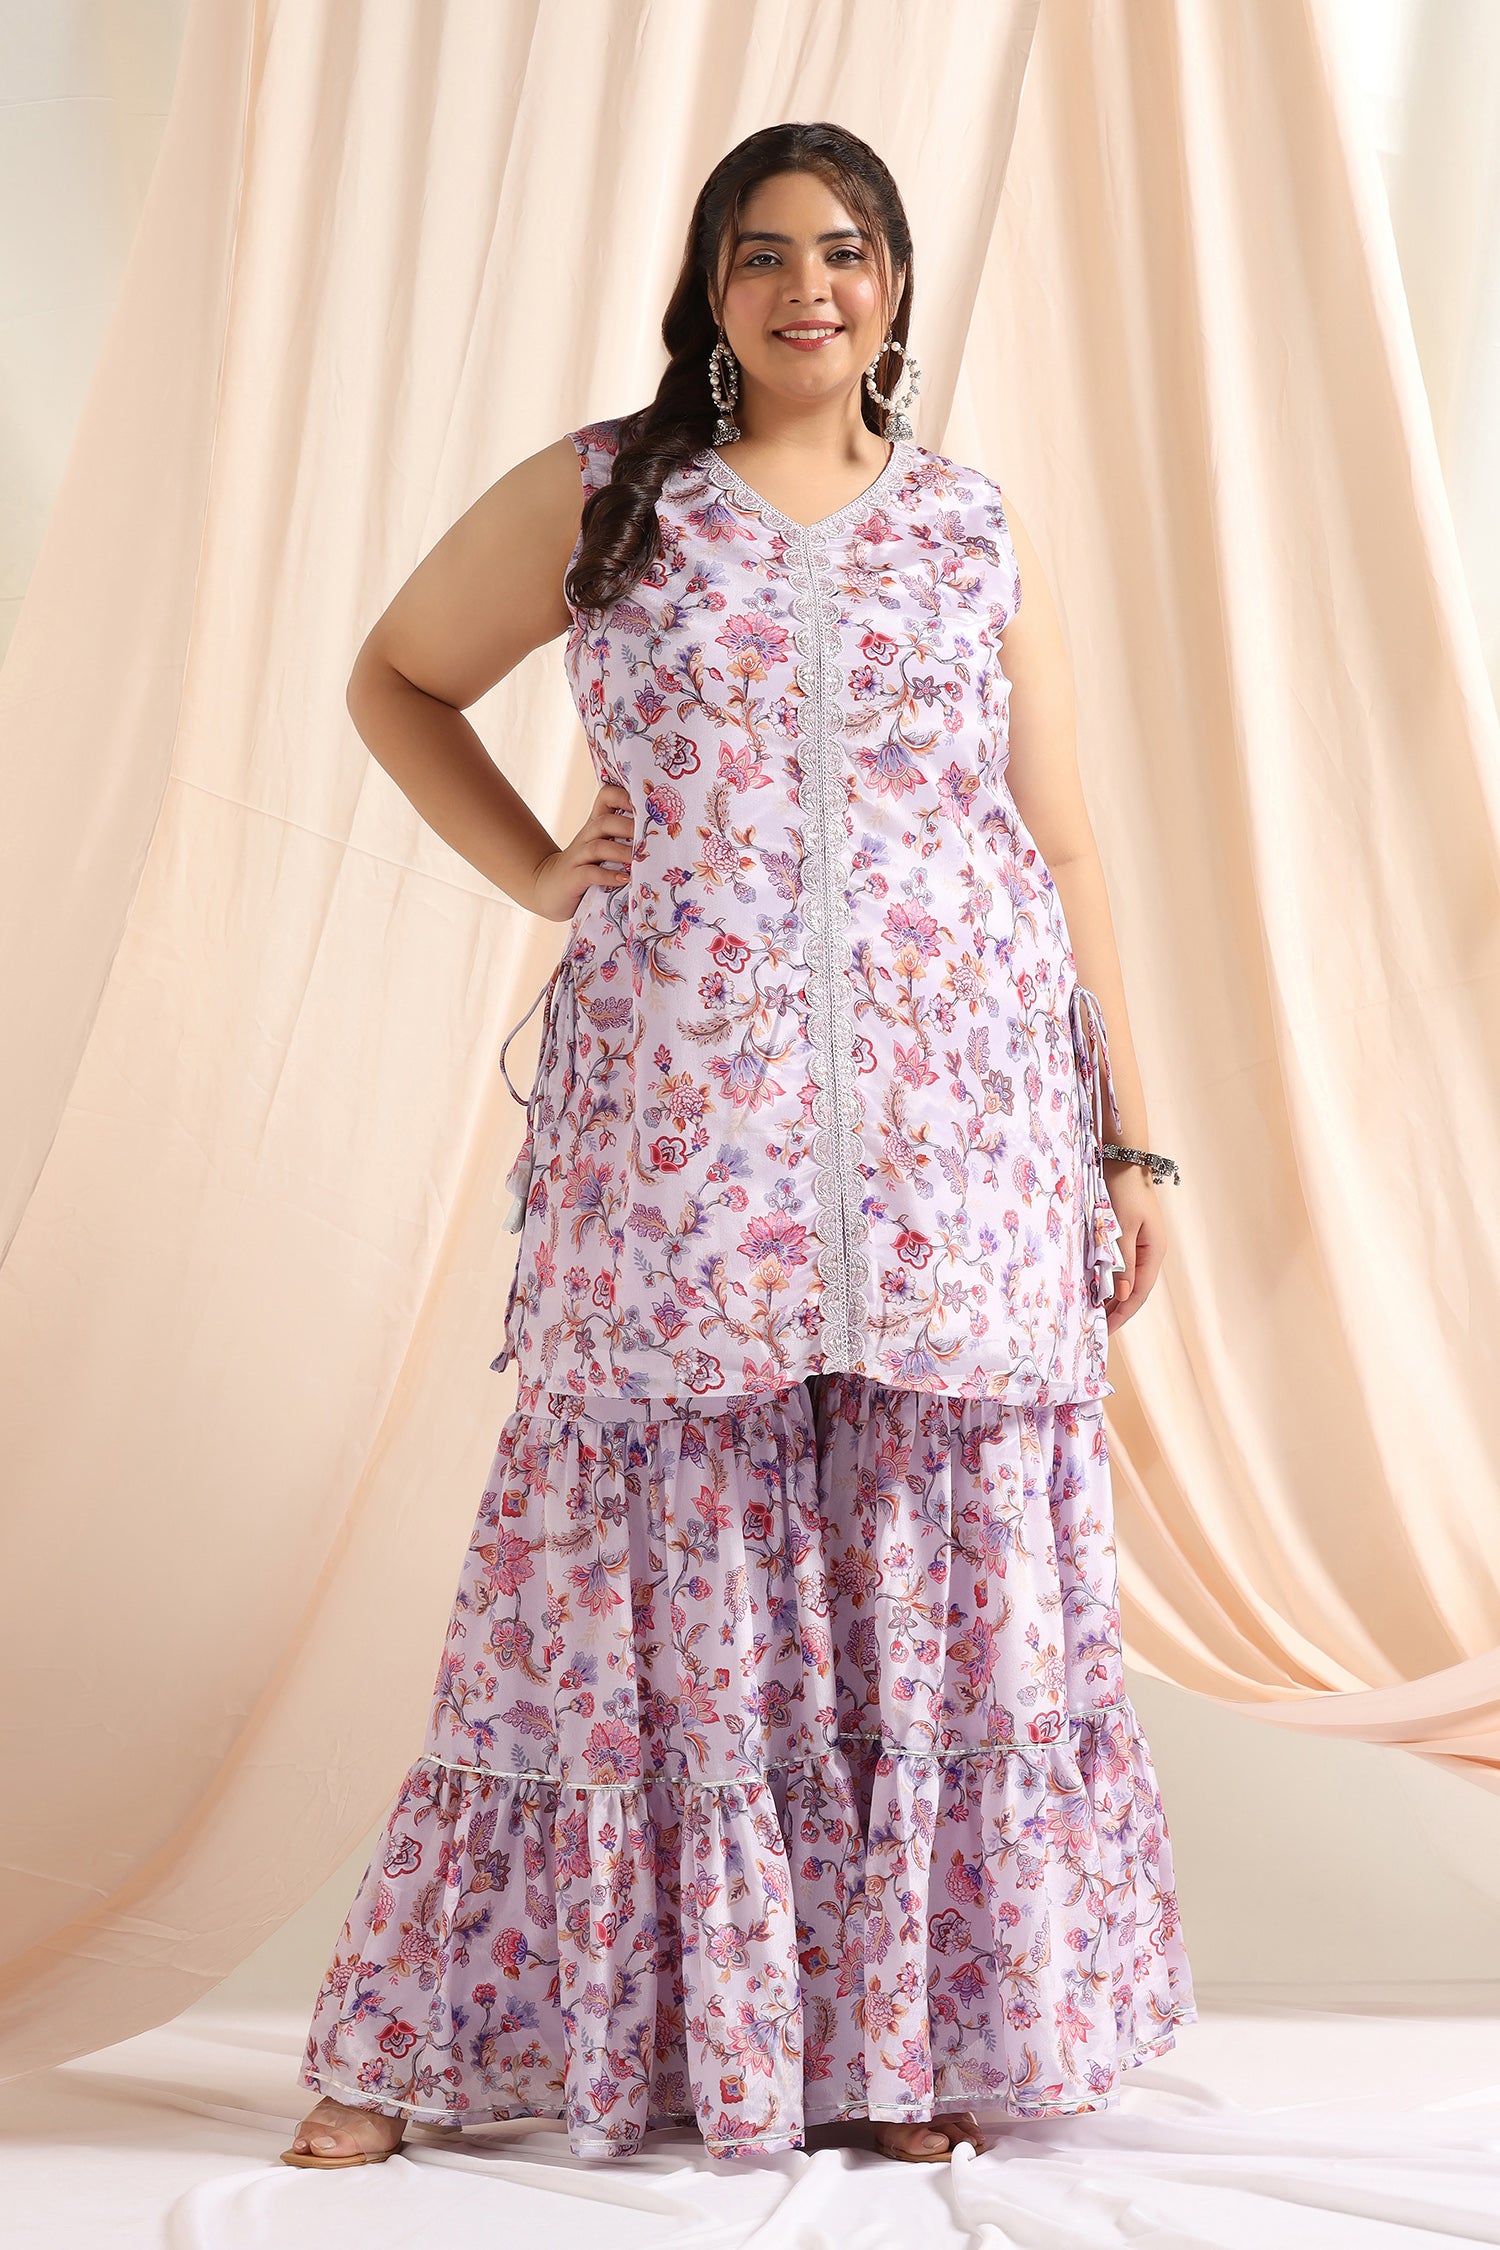 Unbranded Summer Bohemia Chiffon Dress Women V-Neck A Style India | Ubuy